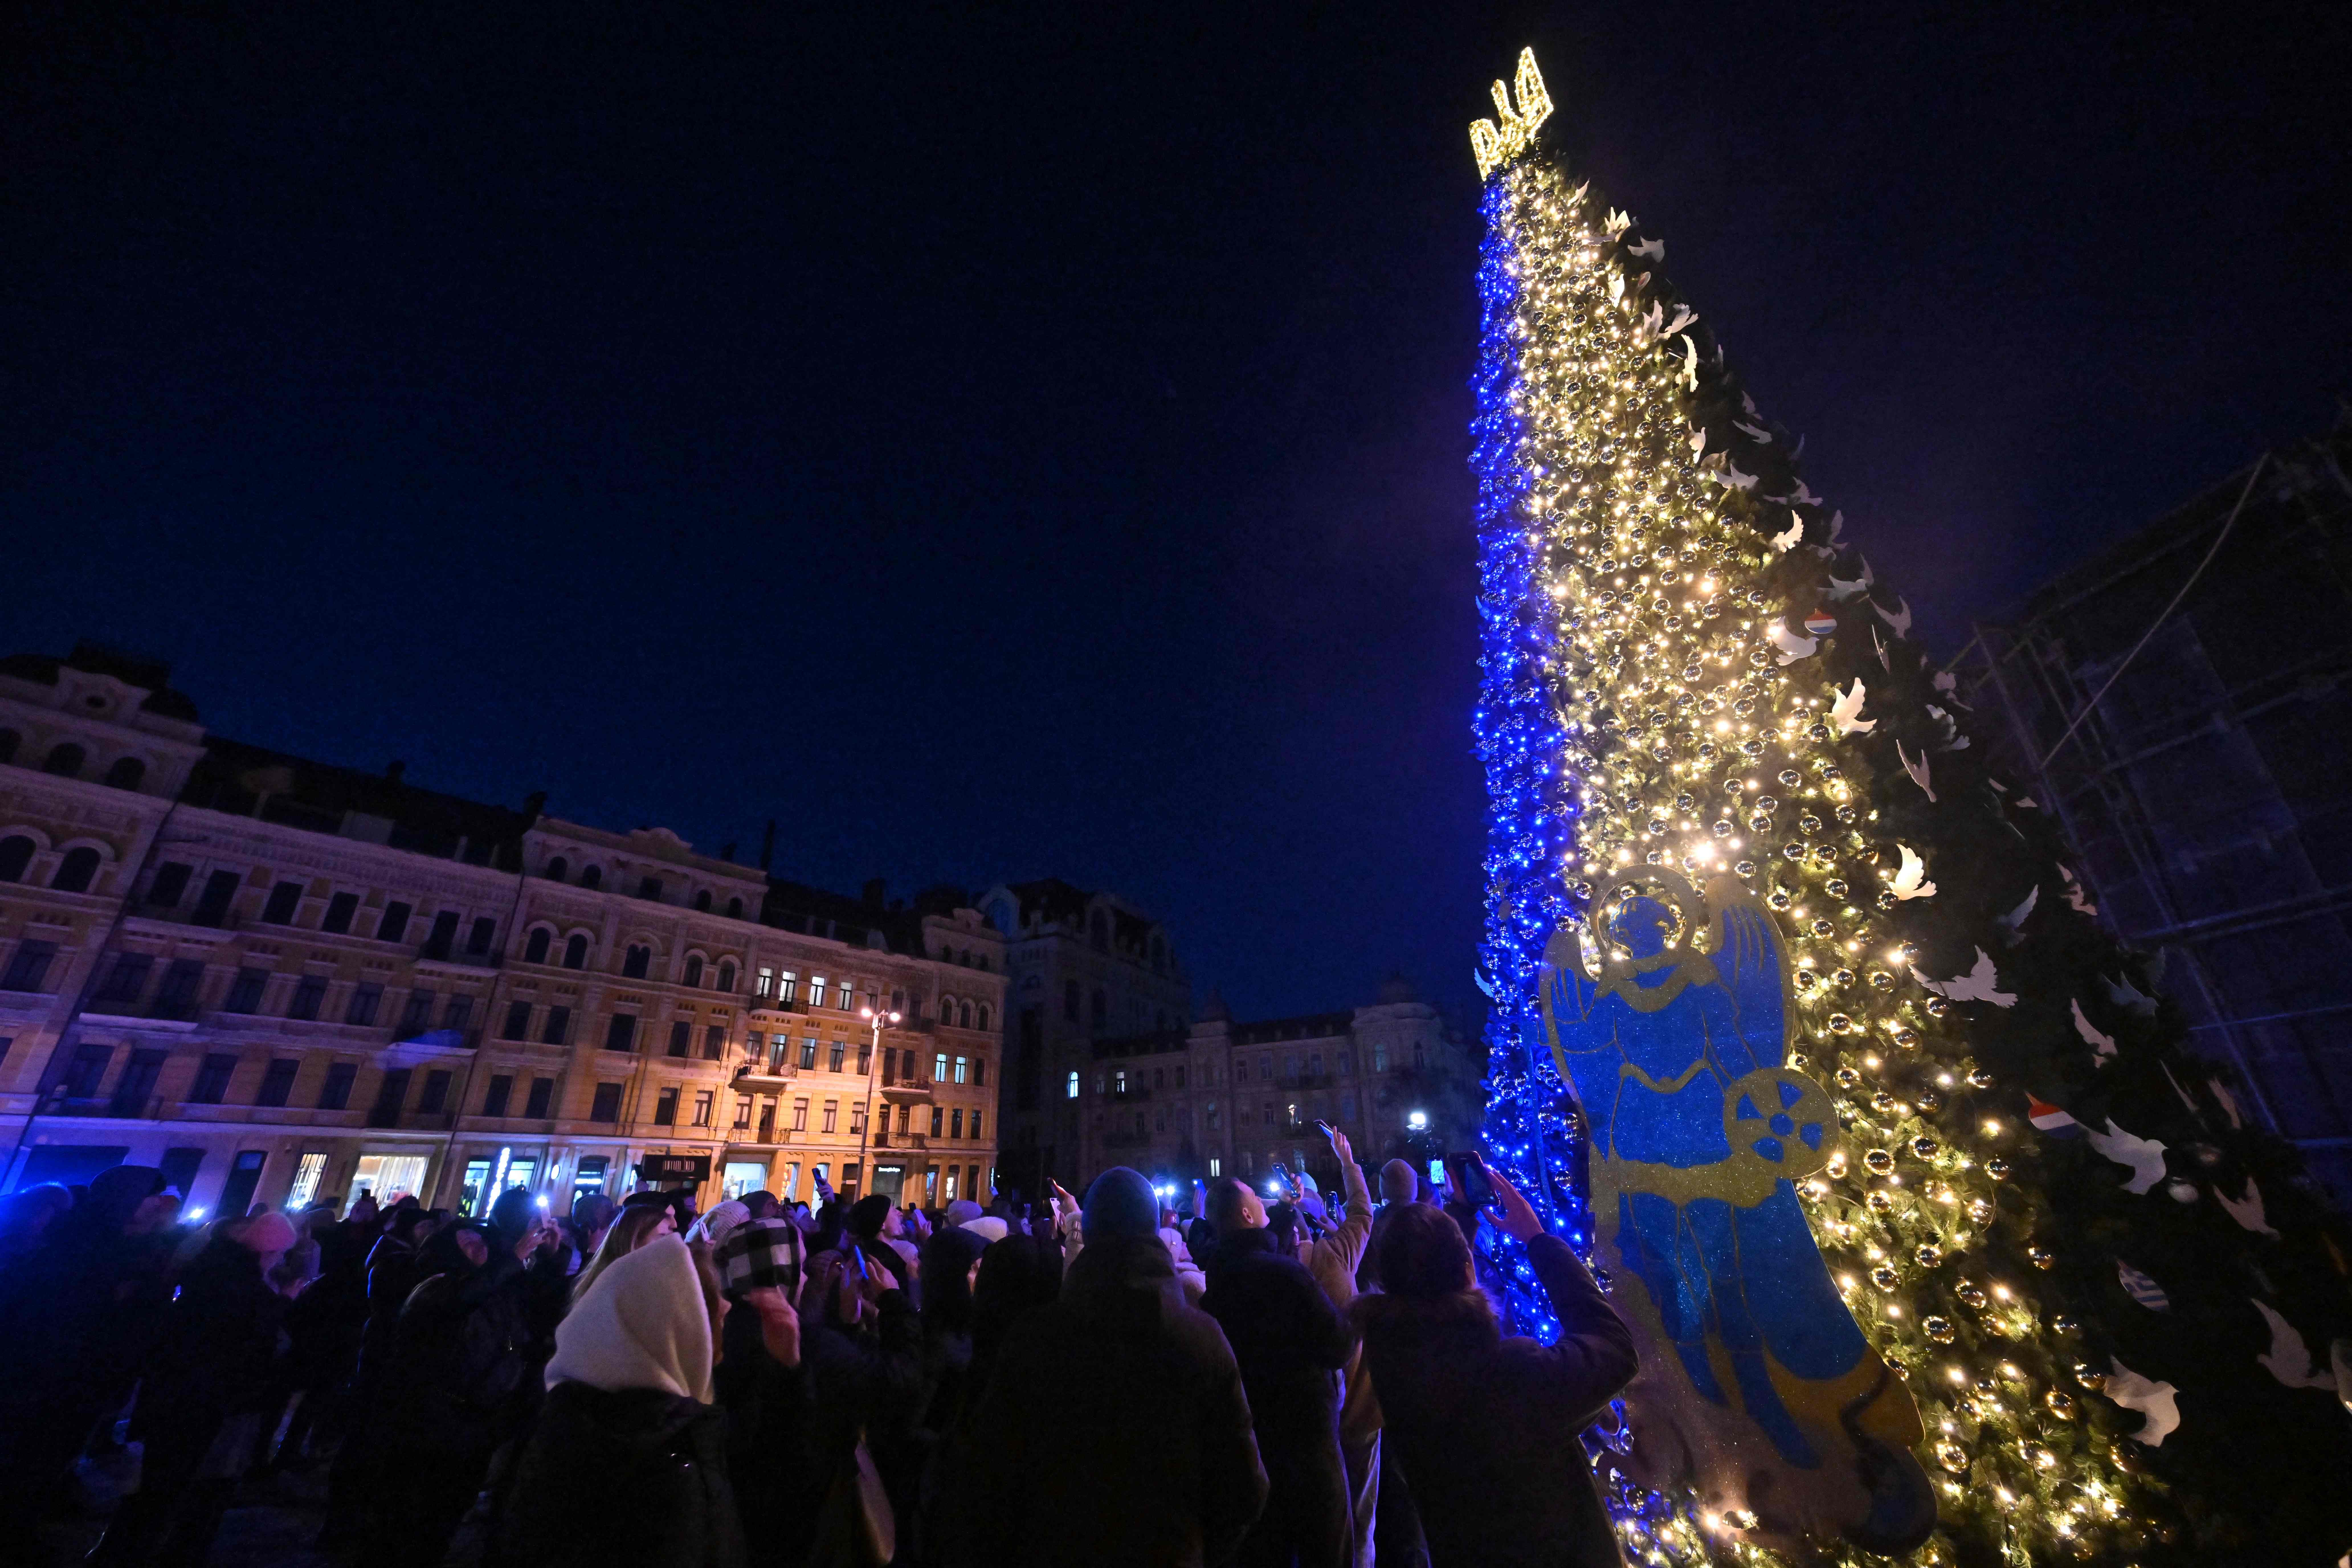 Et juletre i Kyiv, lyssatt i de ukrainske farger, gir håp.